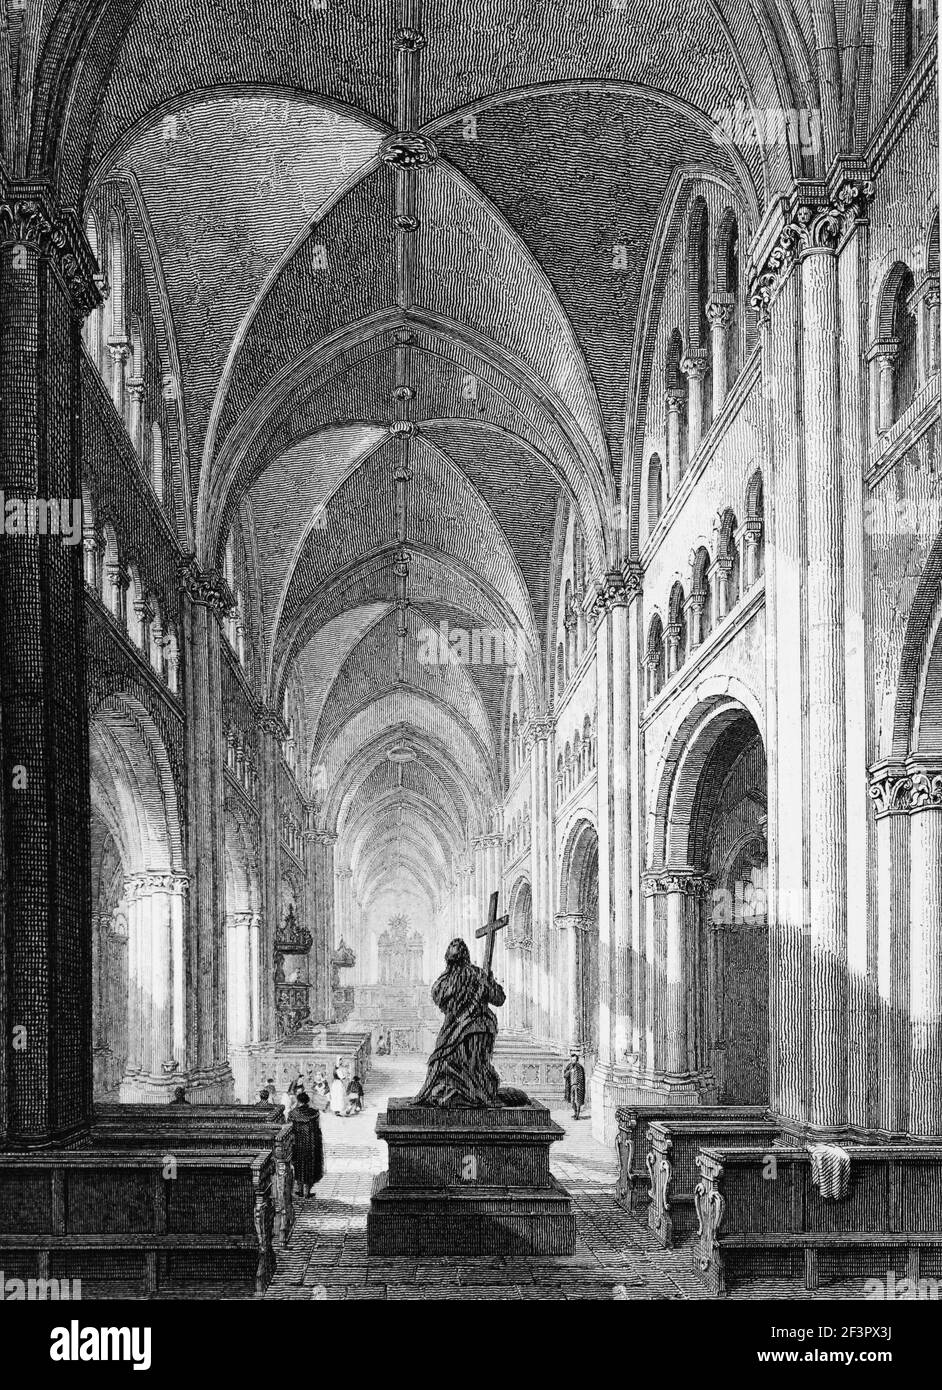 Innenraum des katholischen Bonner Doms, Bonn am Rhein, Nordrhein-Westfalen, Deutschland, Stahlstich von 1832 Stockfoto